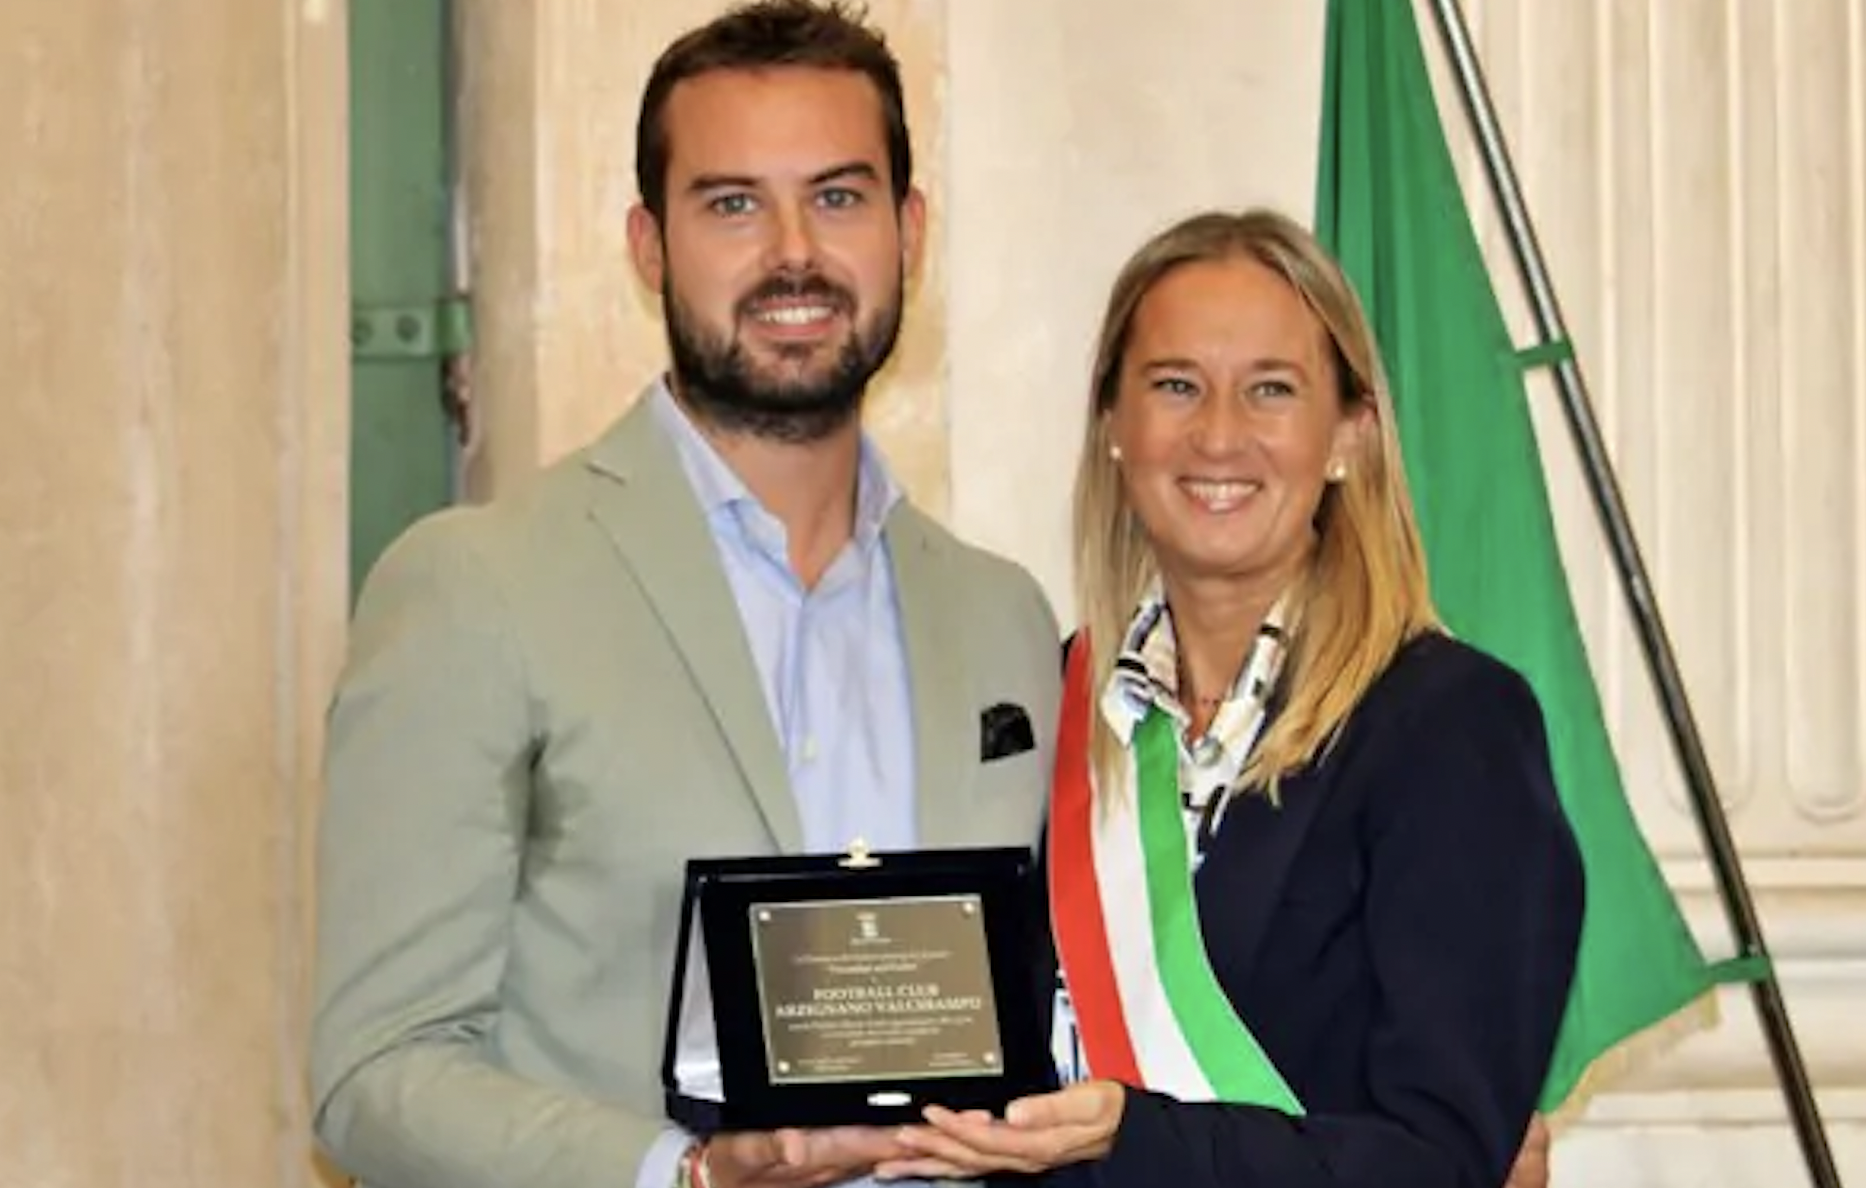 Sindaco Bevilacqua consegna il premio “Vicentini sul podio” all'FC Arzignano Valchiampo